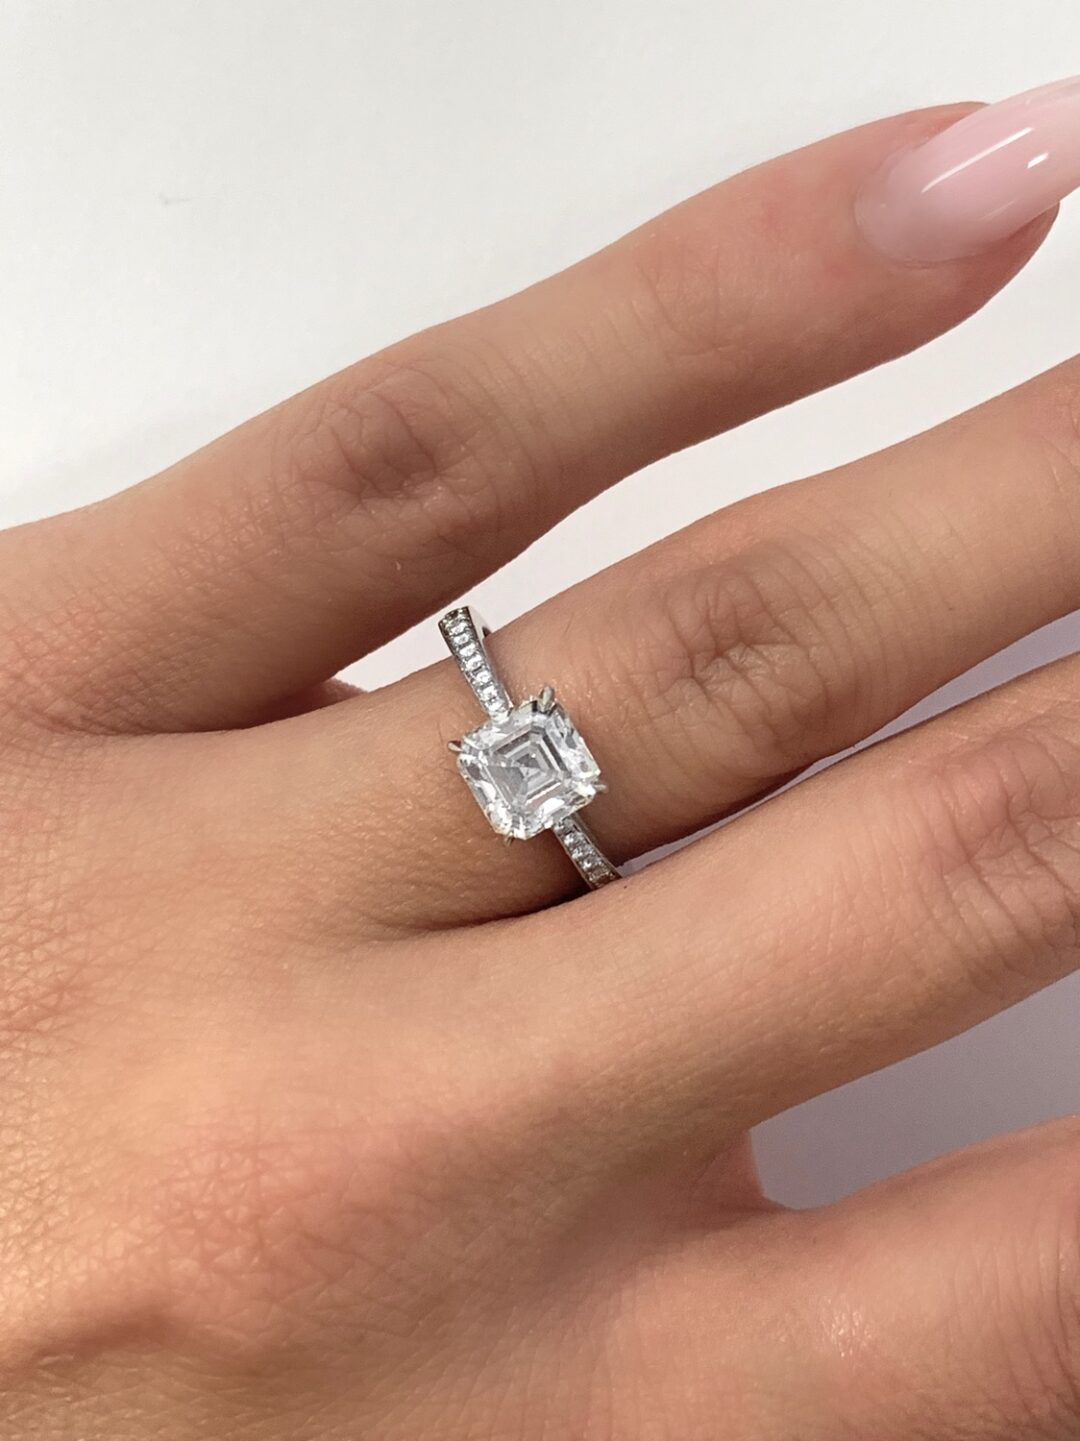 EXCEPTIONAL GIA Certified 5 Carat Asscher Cut Diamond Solitaire Ring |  Ascher cut diamond engagement ring, Asscher cut diamond ring, Asscher cut  engagement rings